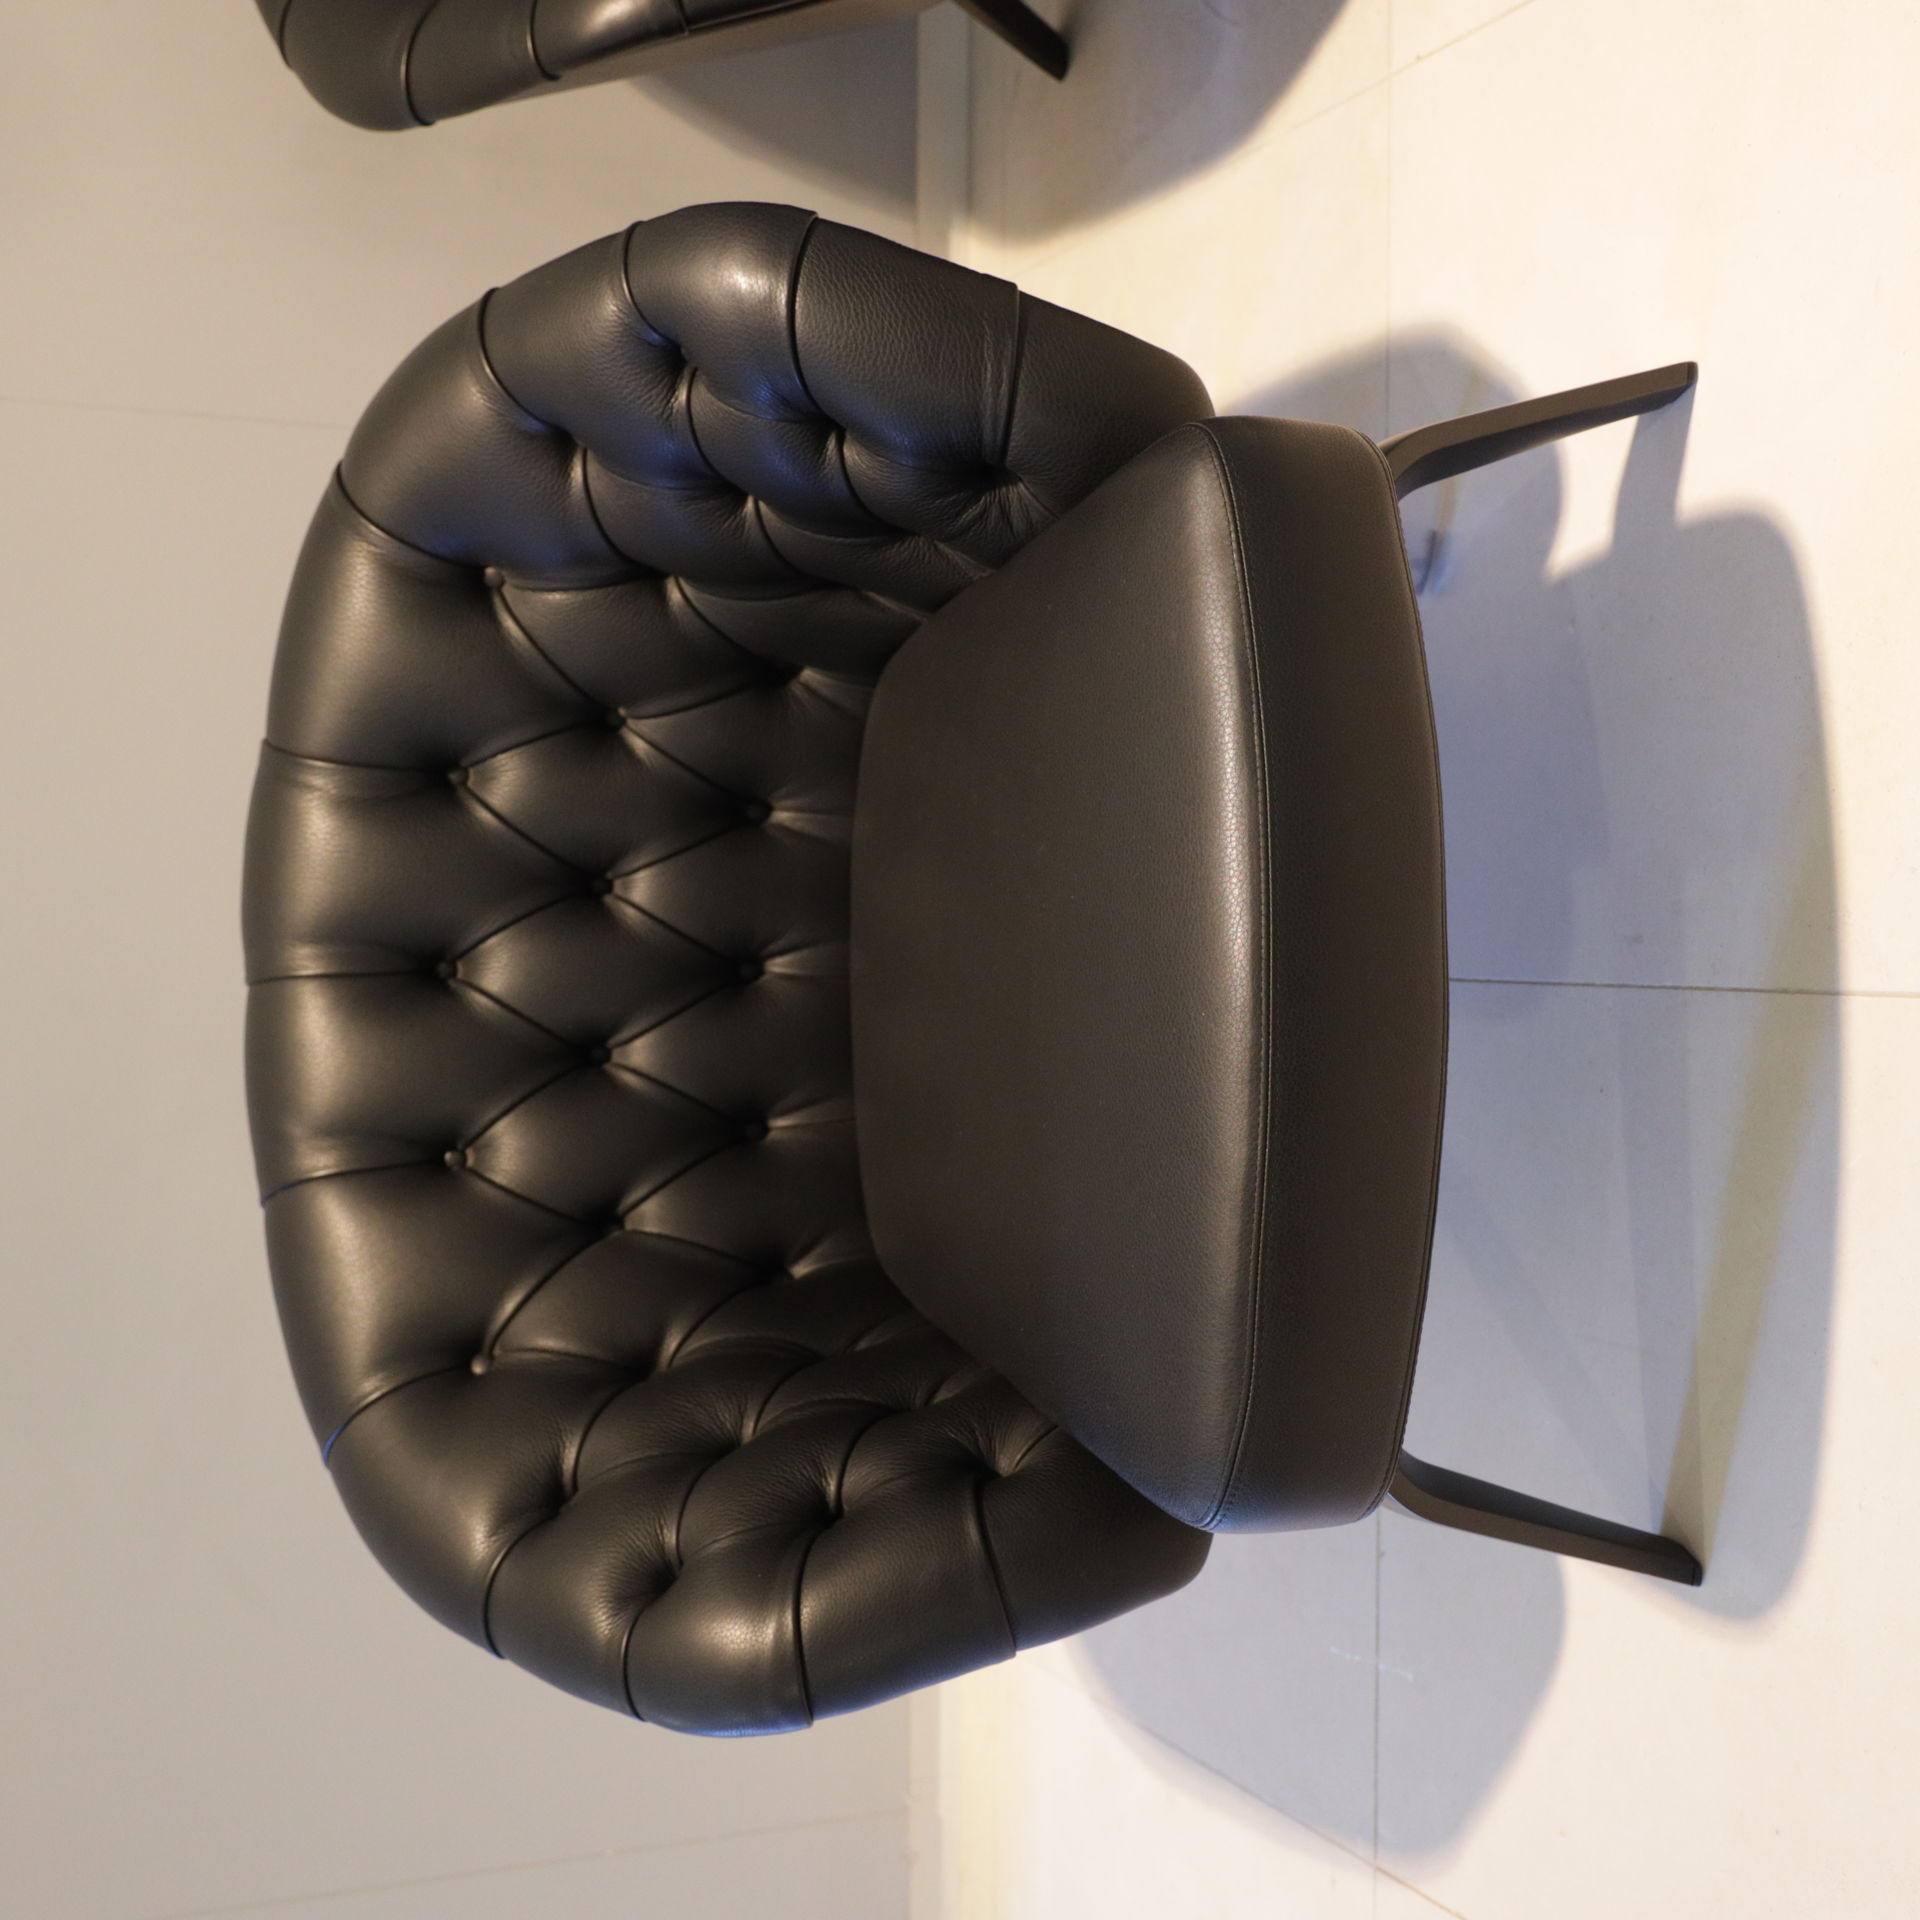 Italiaans Design fauteuil - Showroom